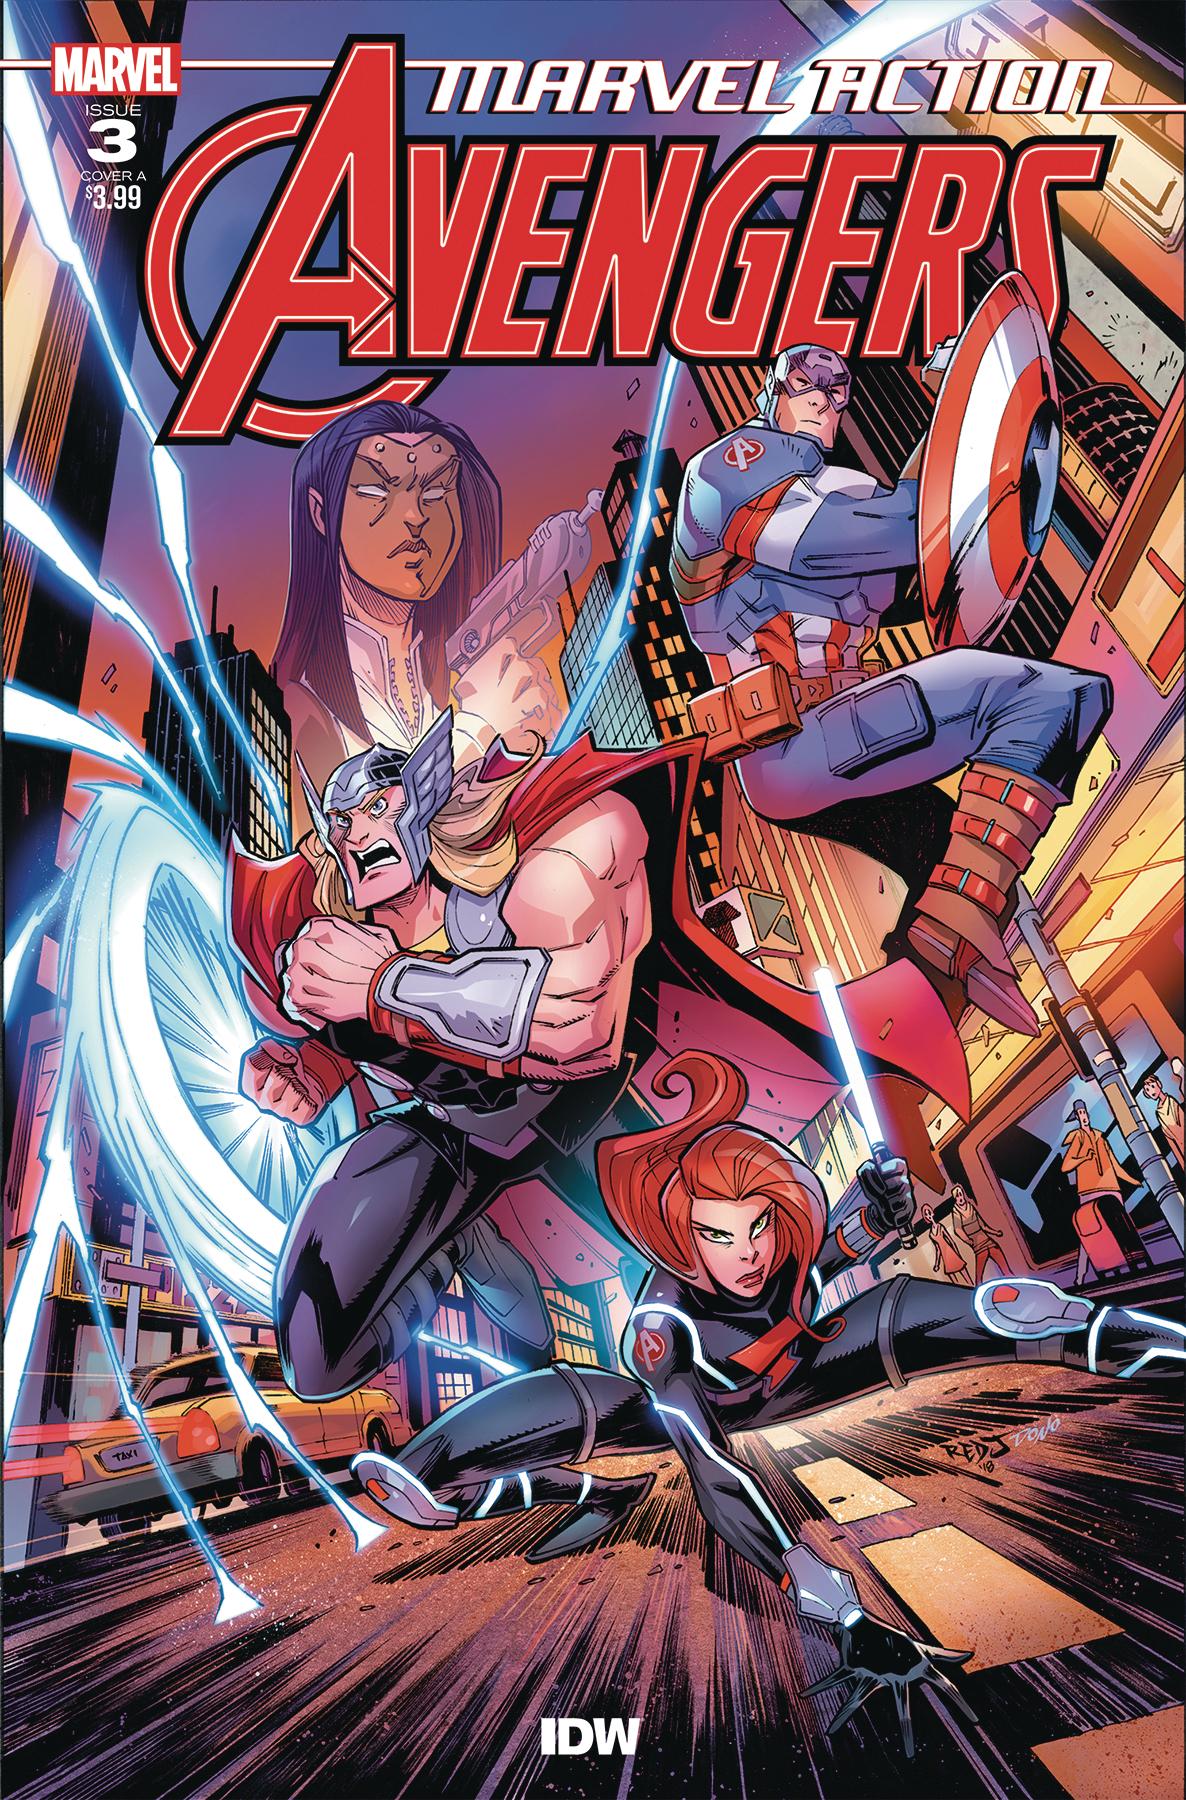 Marvel Action: Avengers Vol. 1 #3